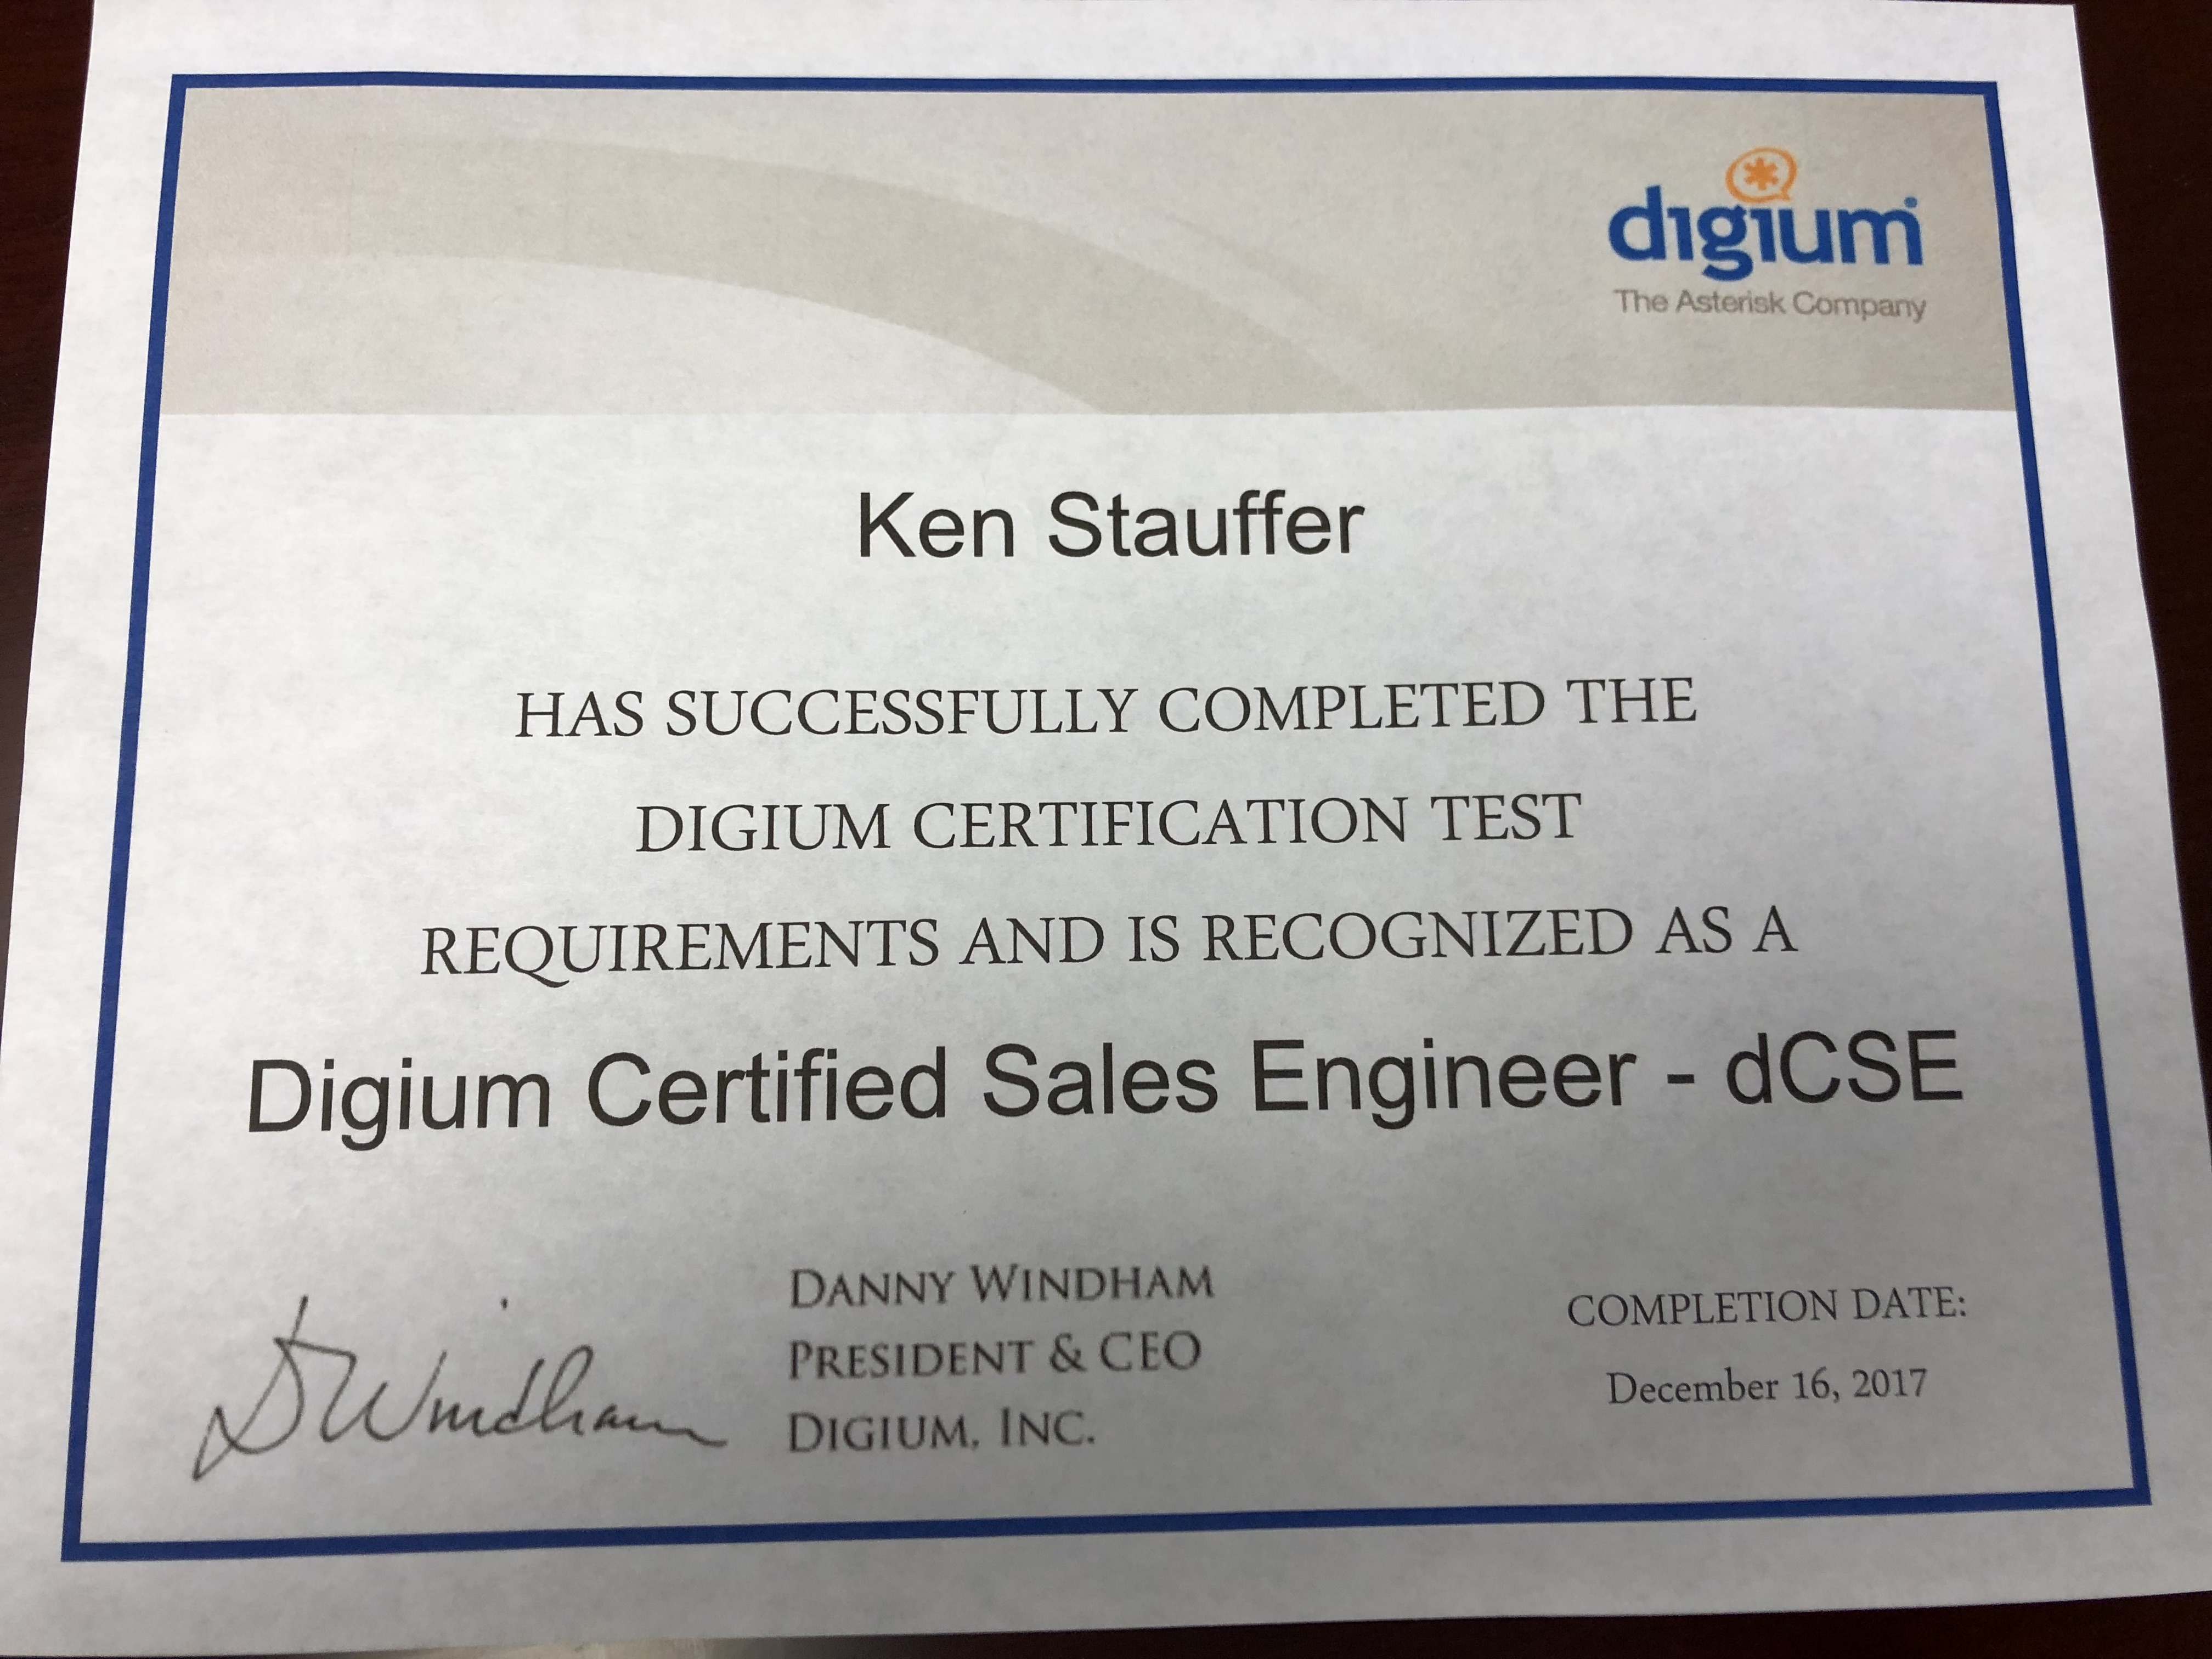 Stauffer Technologies, Digium Titanium partners